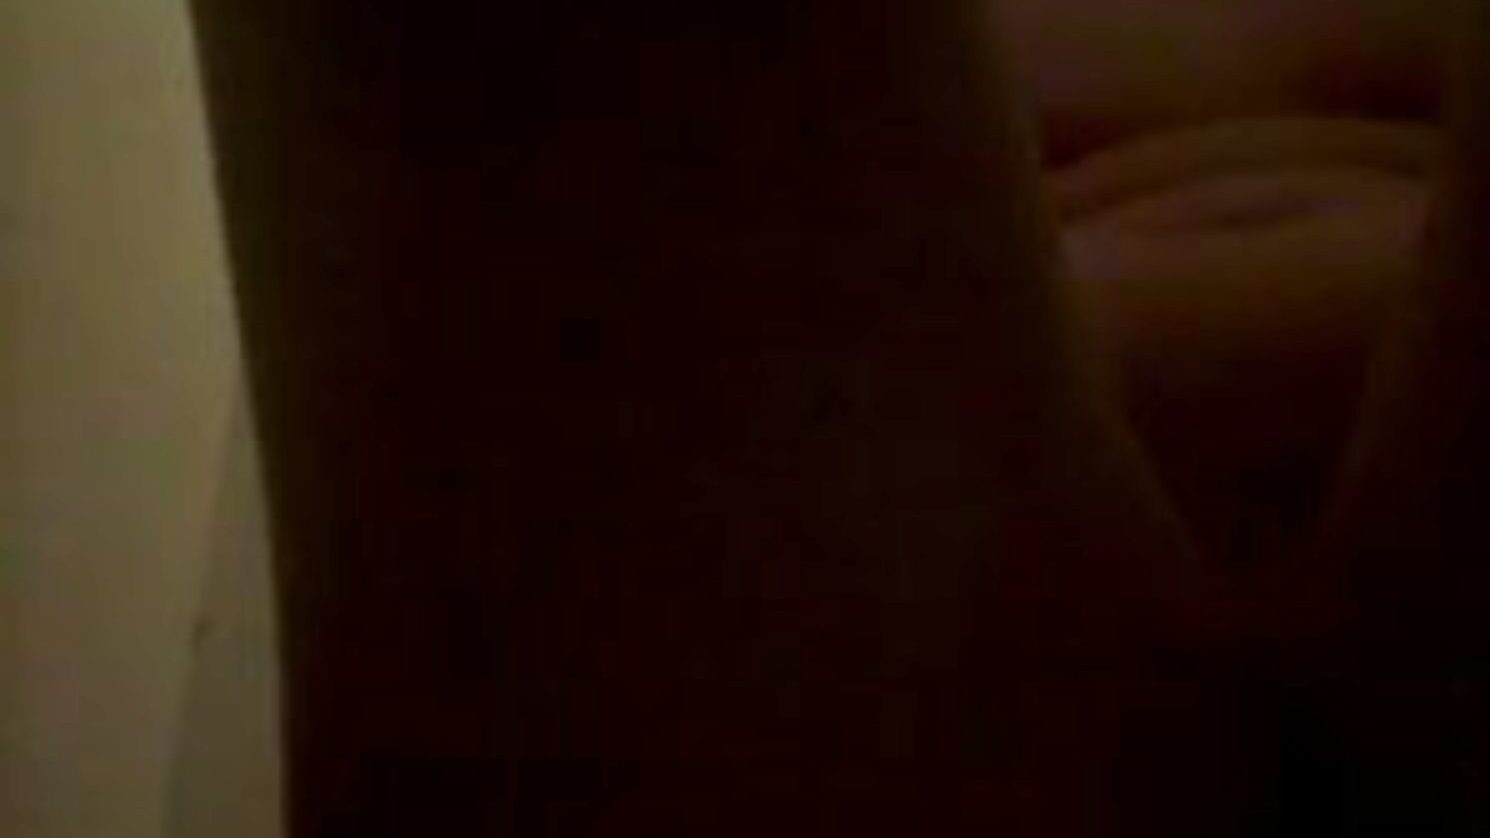 piss et frotte sur le corps, ingyenes pisi pornó 45: xhamster nézni piss et frotte sur le corps klipet a xhamsteren, a legkövérebb orgiacsöves weboldalon, ahol rengeteg ingyenes pisilés és házi készítésű pornó film jelenet jelenik meg